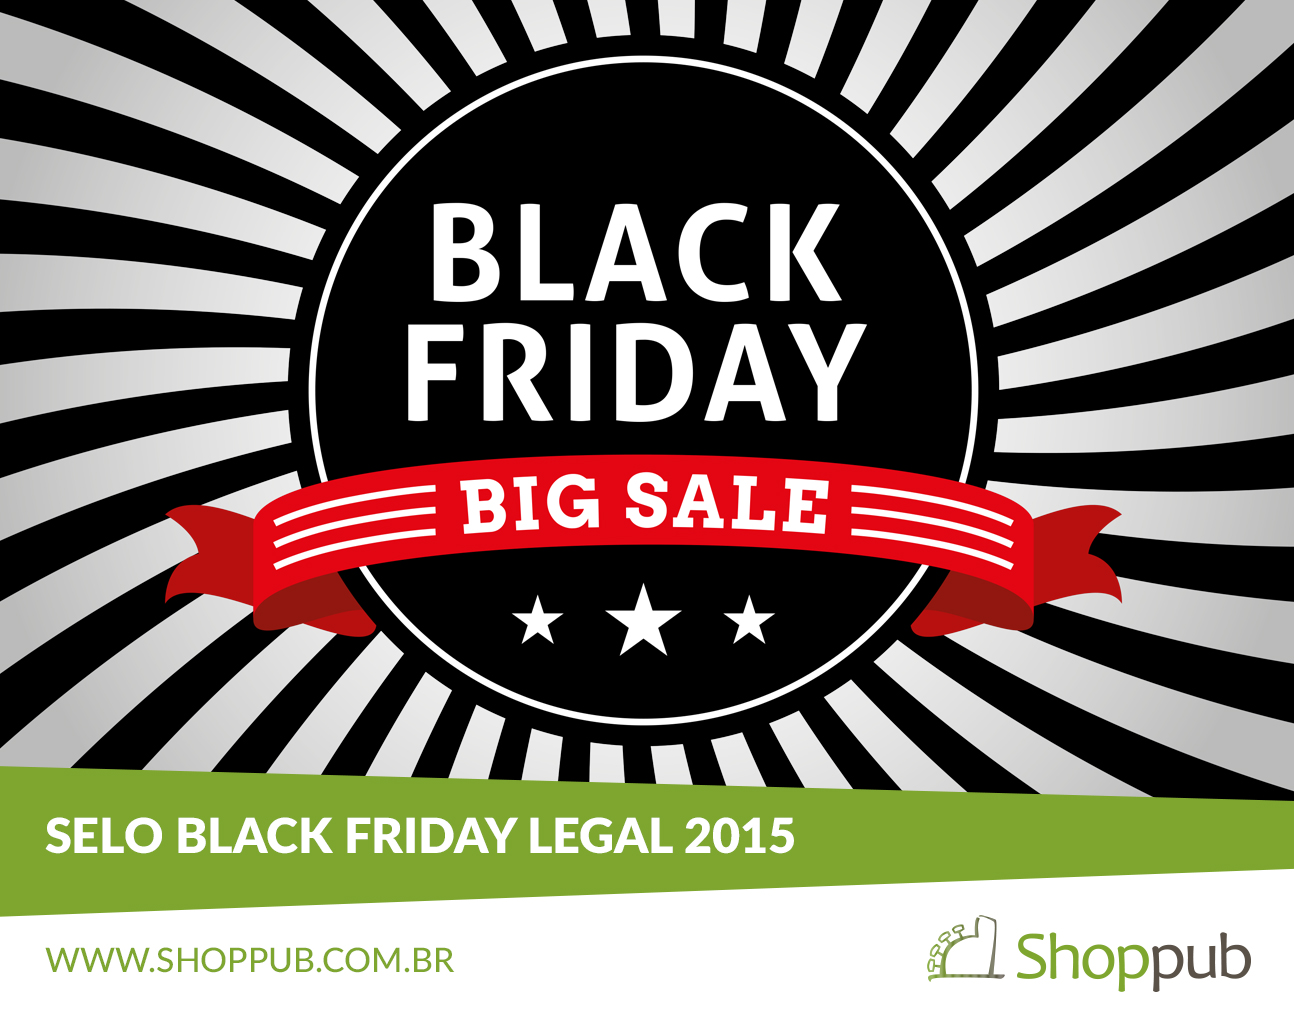 Aberta as inscrições para o Selo Black Friday Legal 2015